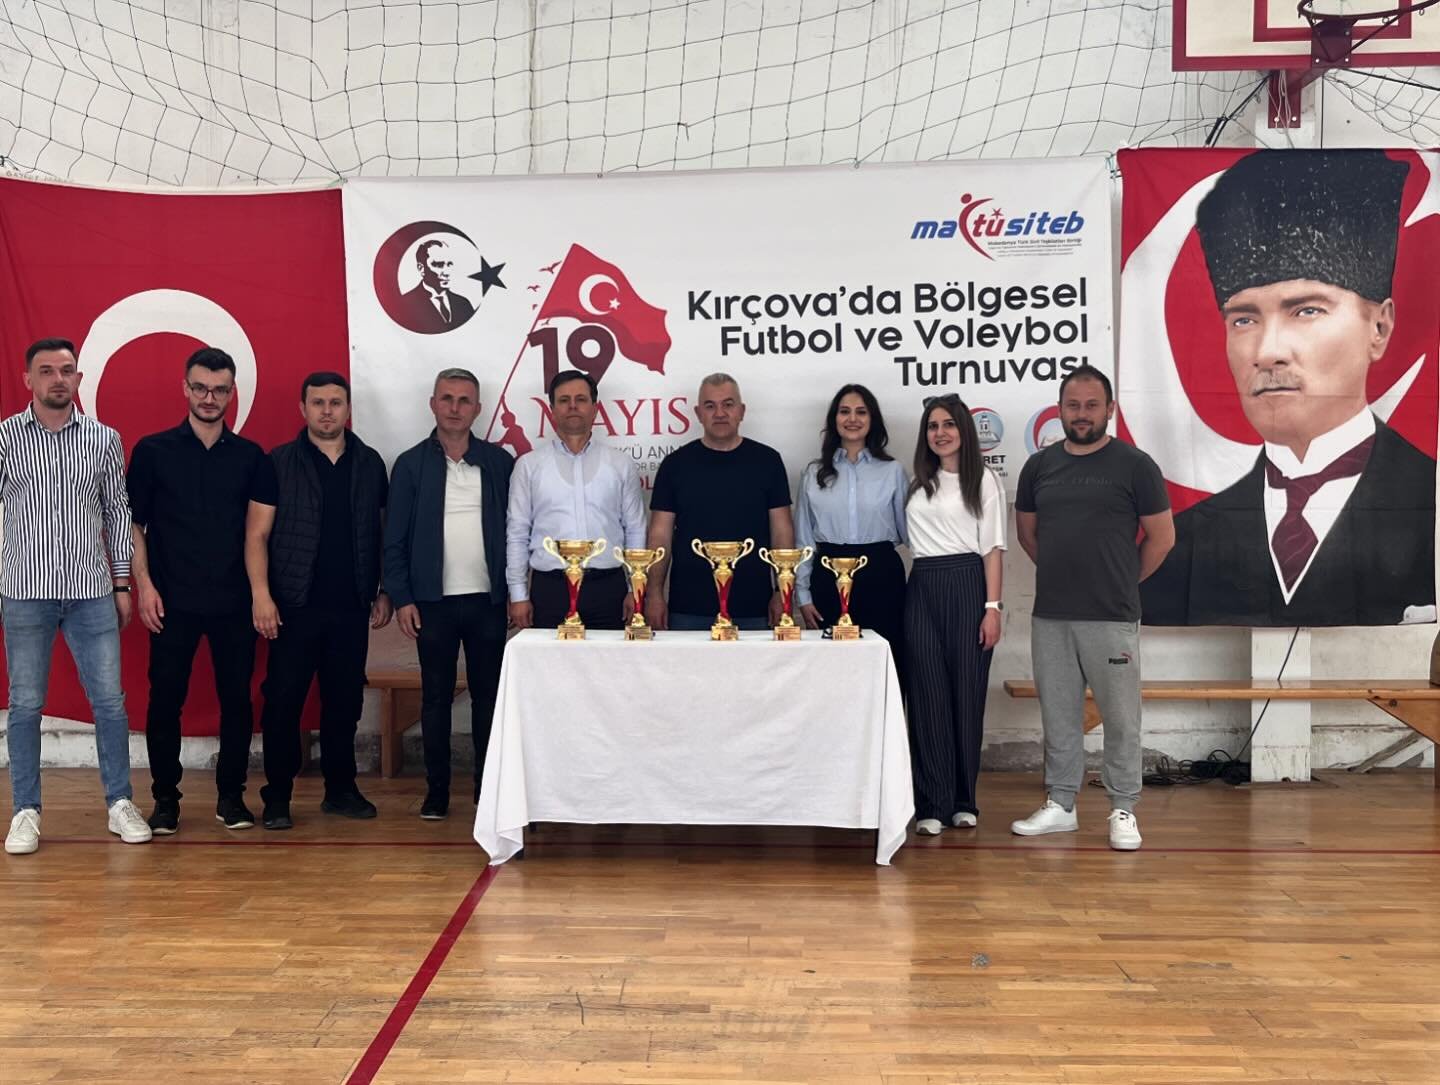 19 Mayıs vesilesiyle Kırçova’da Voleybol ve Futbol turnuvası düzenlendi